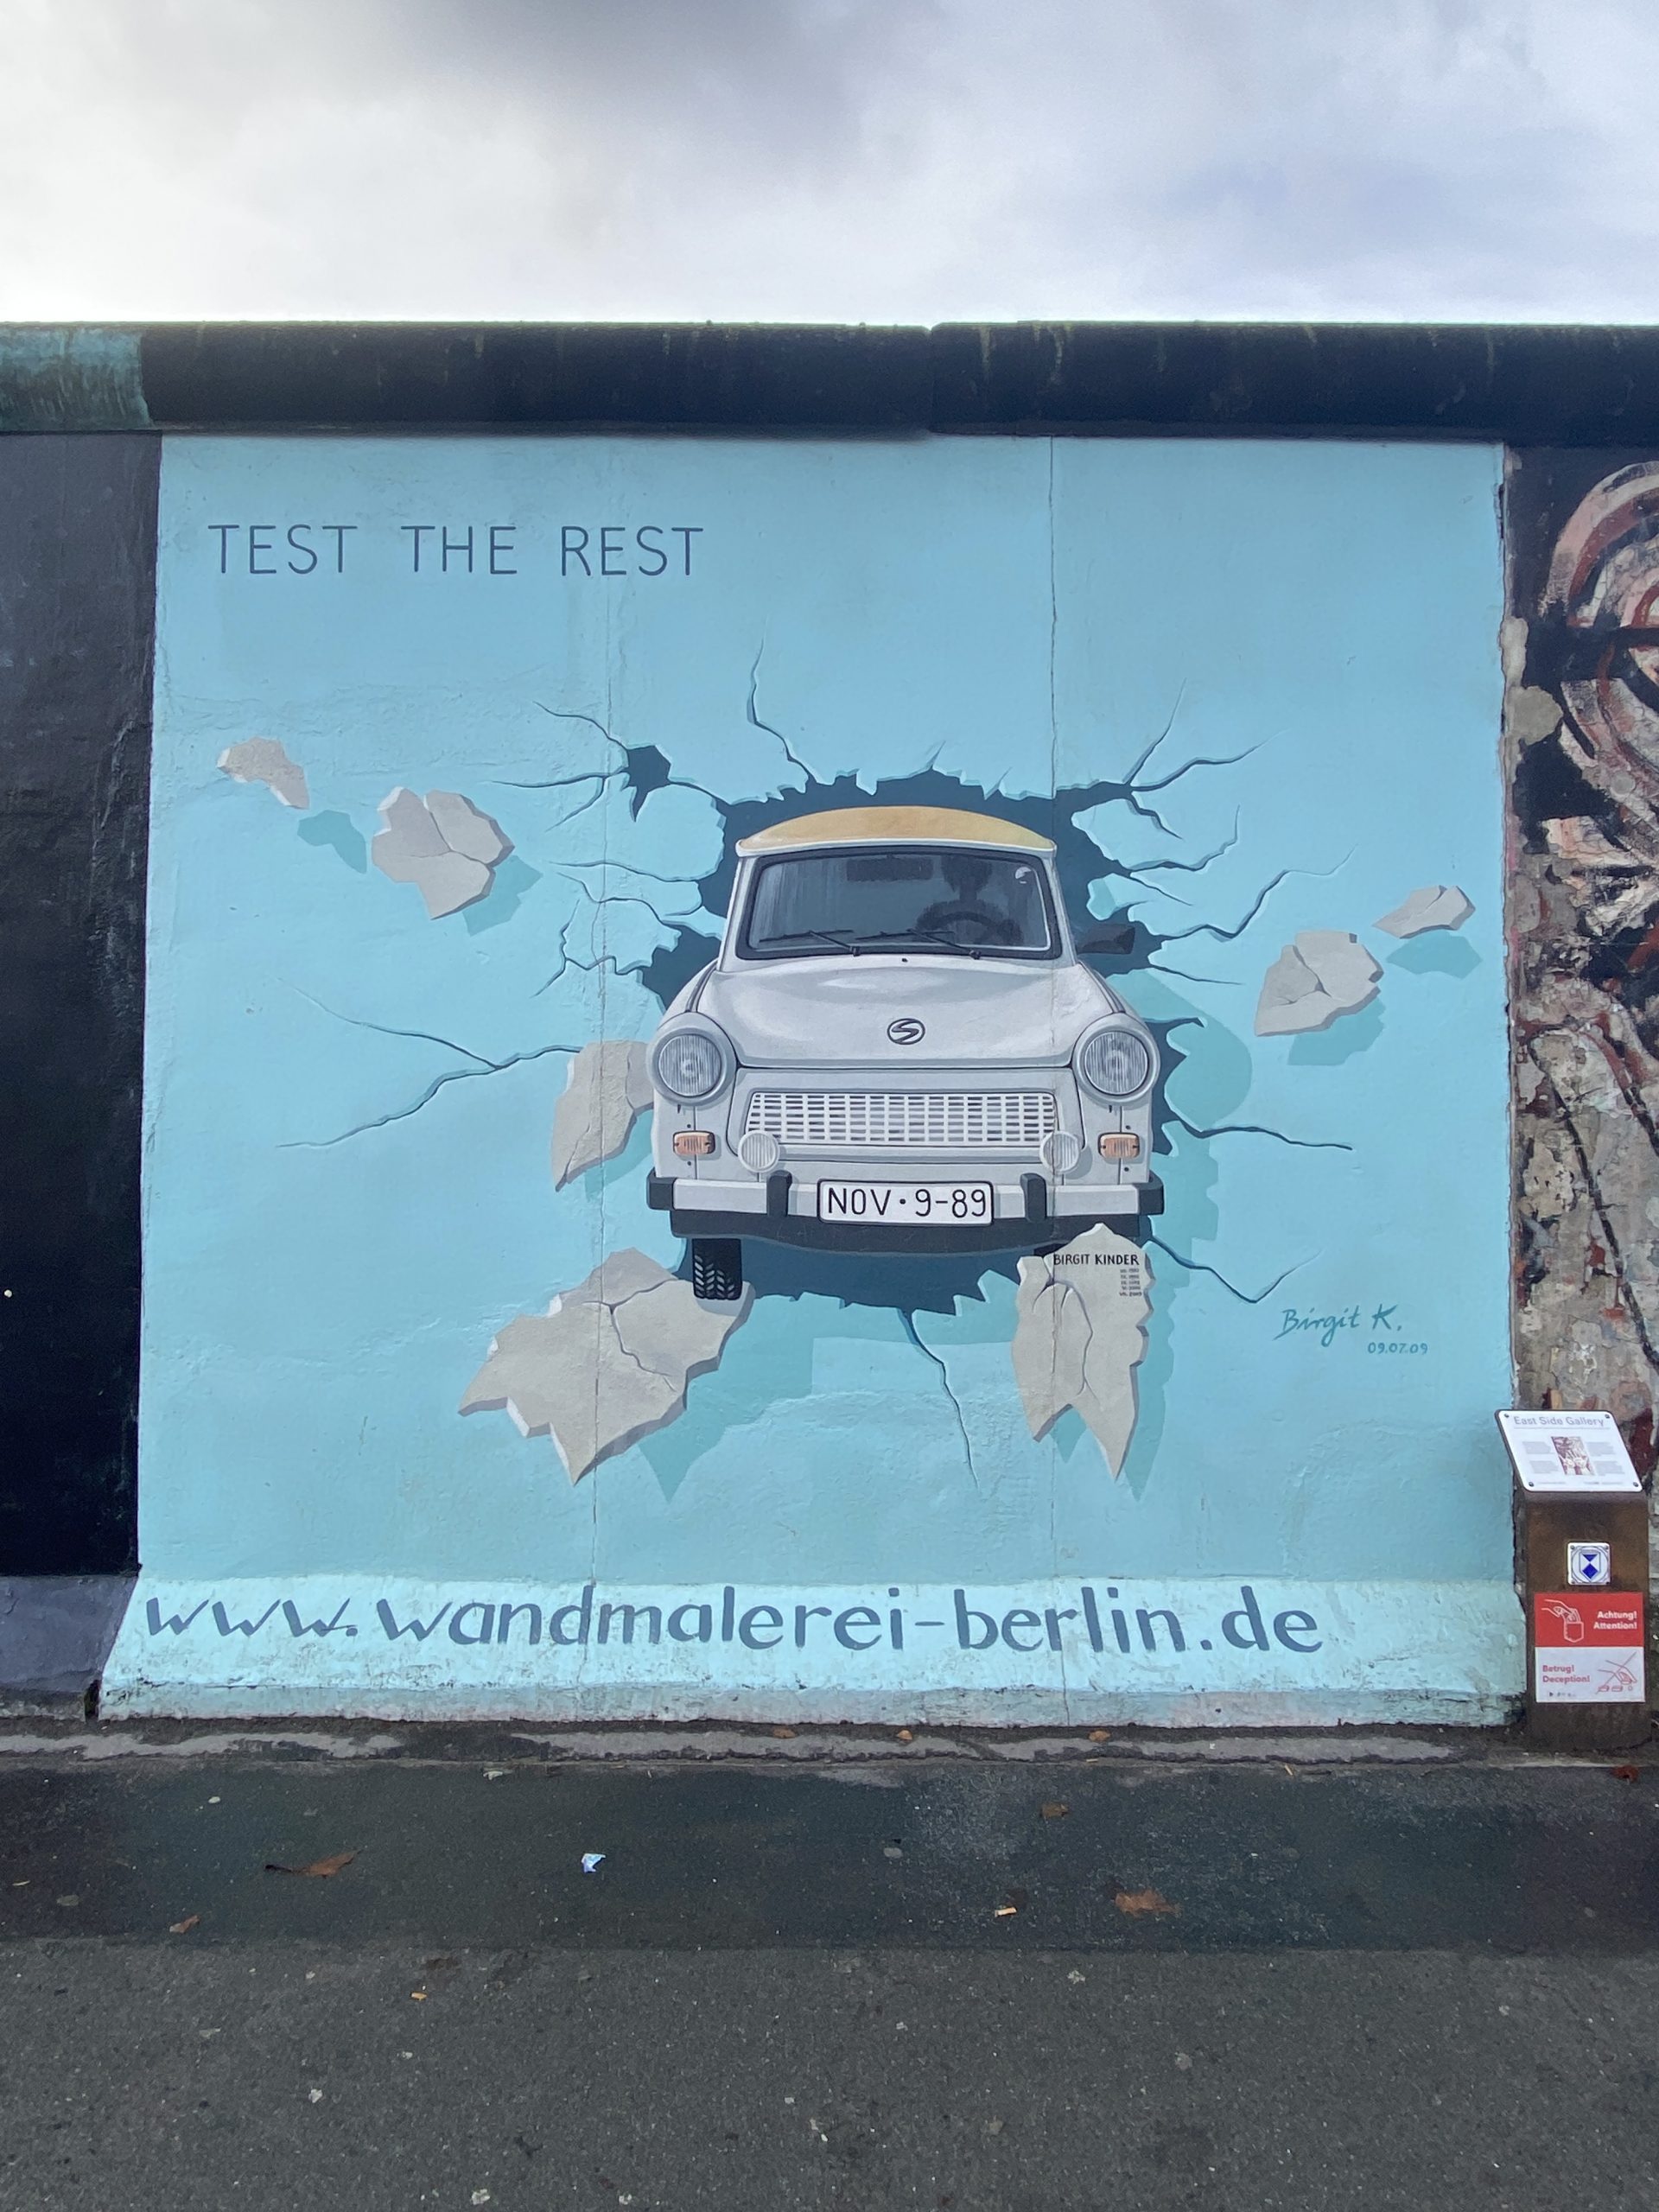 une-journee-a-berlin-itineraire-mur-berlin